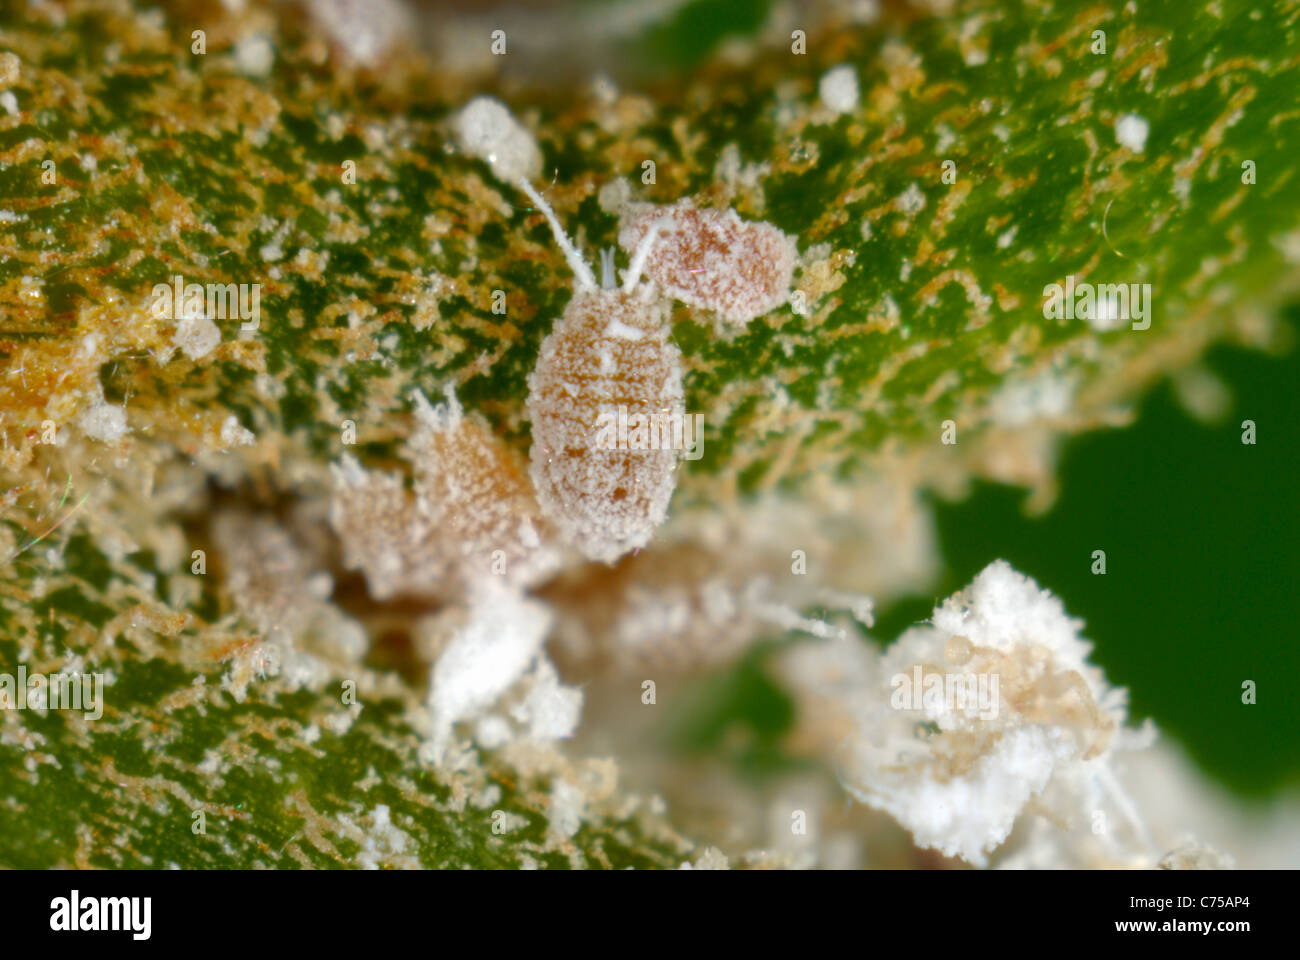 Cingolato immatura del Glasshouse mealybug (Pseudococcus viburni) sul conservatorio pianta di bouganville Foto Stock